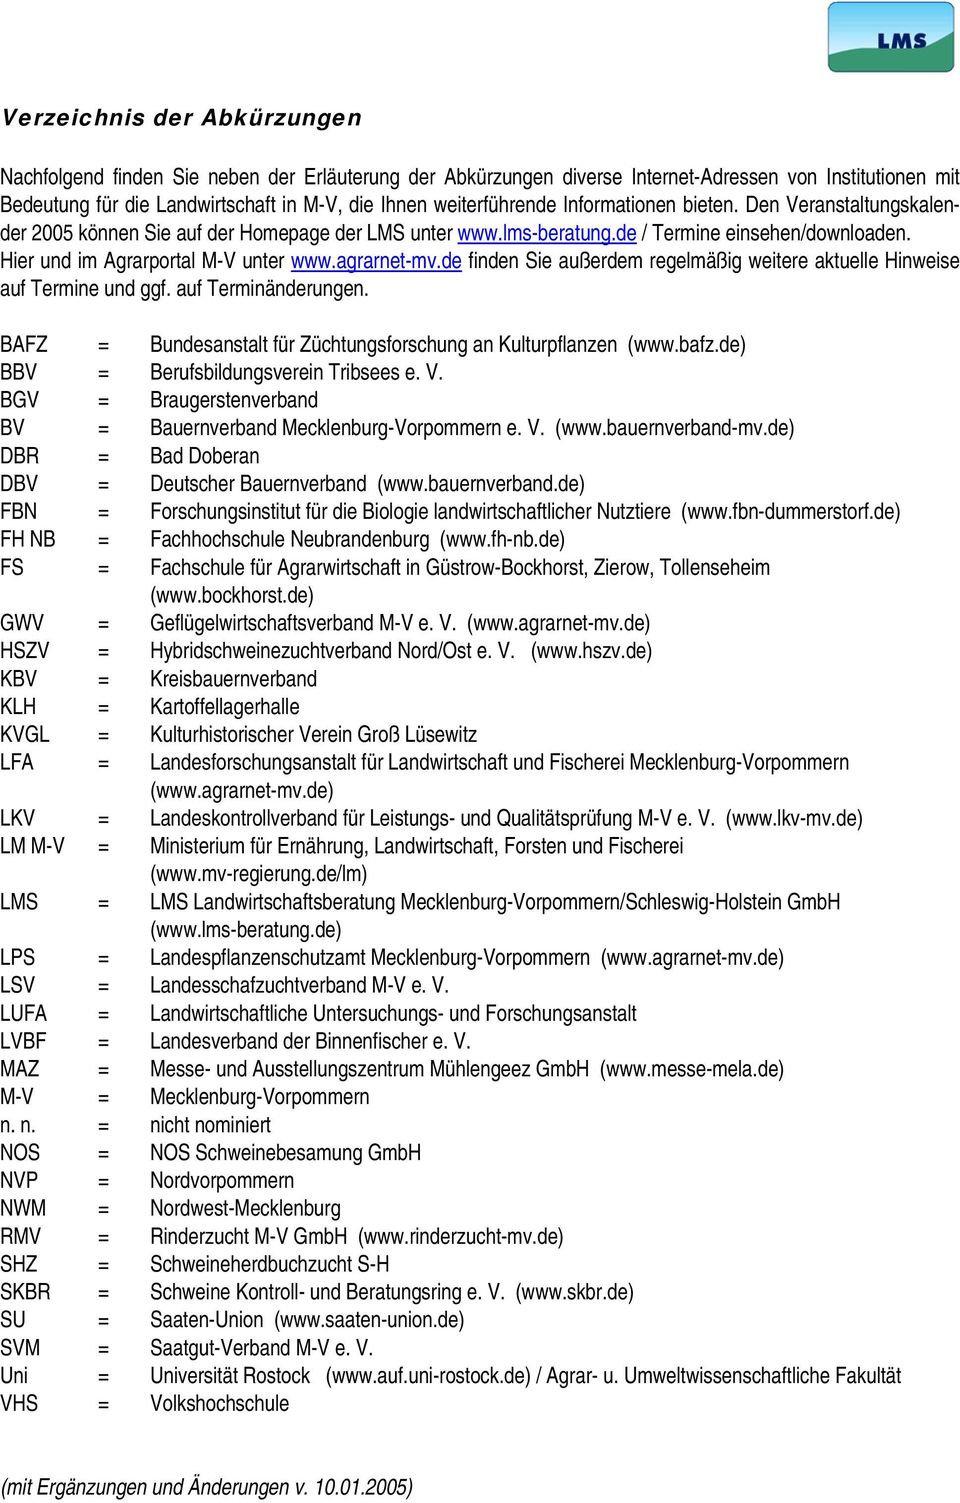 agrarnet-mv.de finden Sie außerdem regelmäßig weitere aktuelle Hinweise auf Termine und ggf. auf Terminänderungen. BAFZ = Bundesanstalt für Züchtungsforschung an Kulturpflanzen (www.bafz.